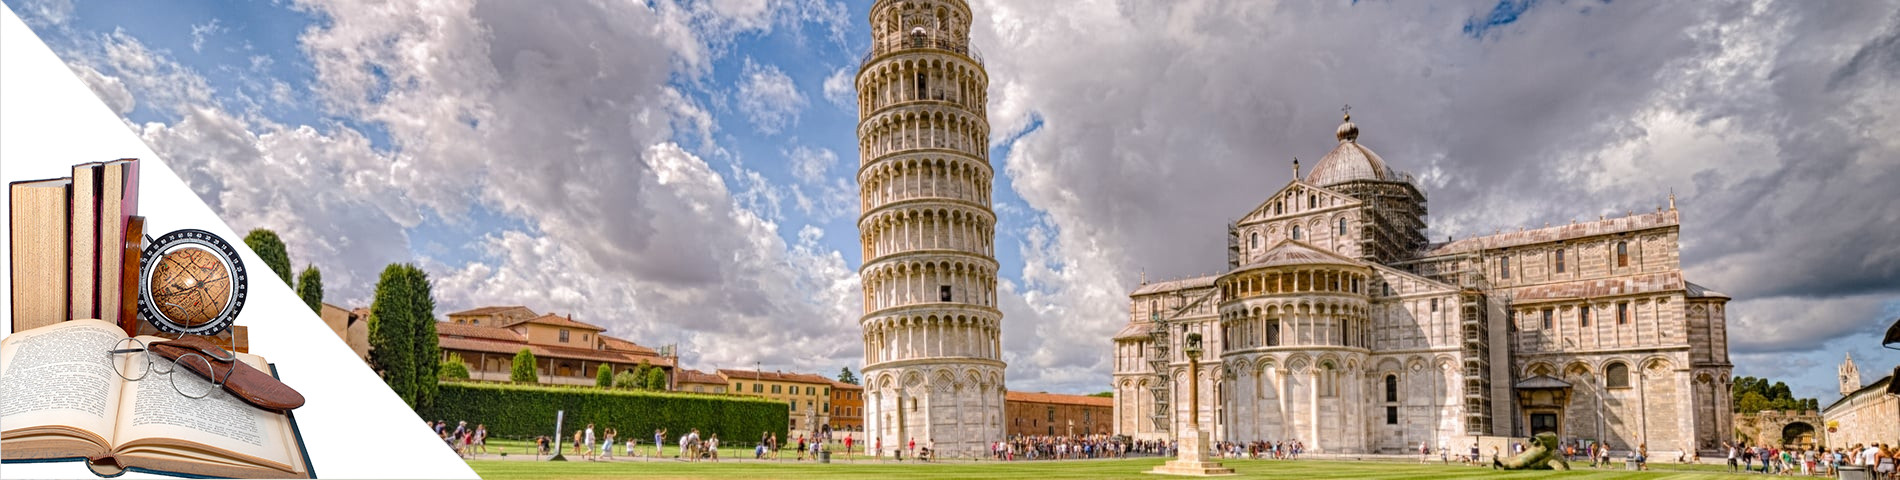 Pisa - Italiano & Artes e Literatura